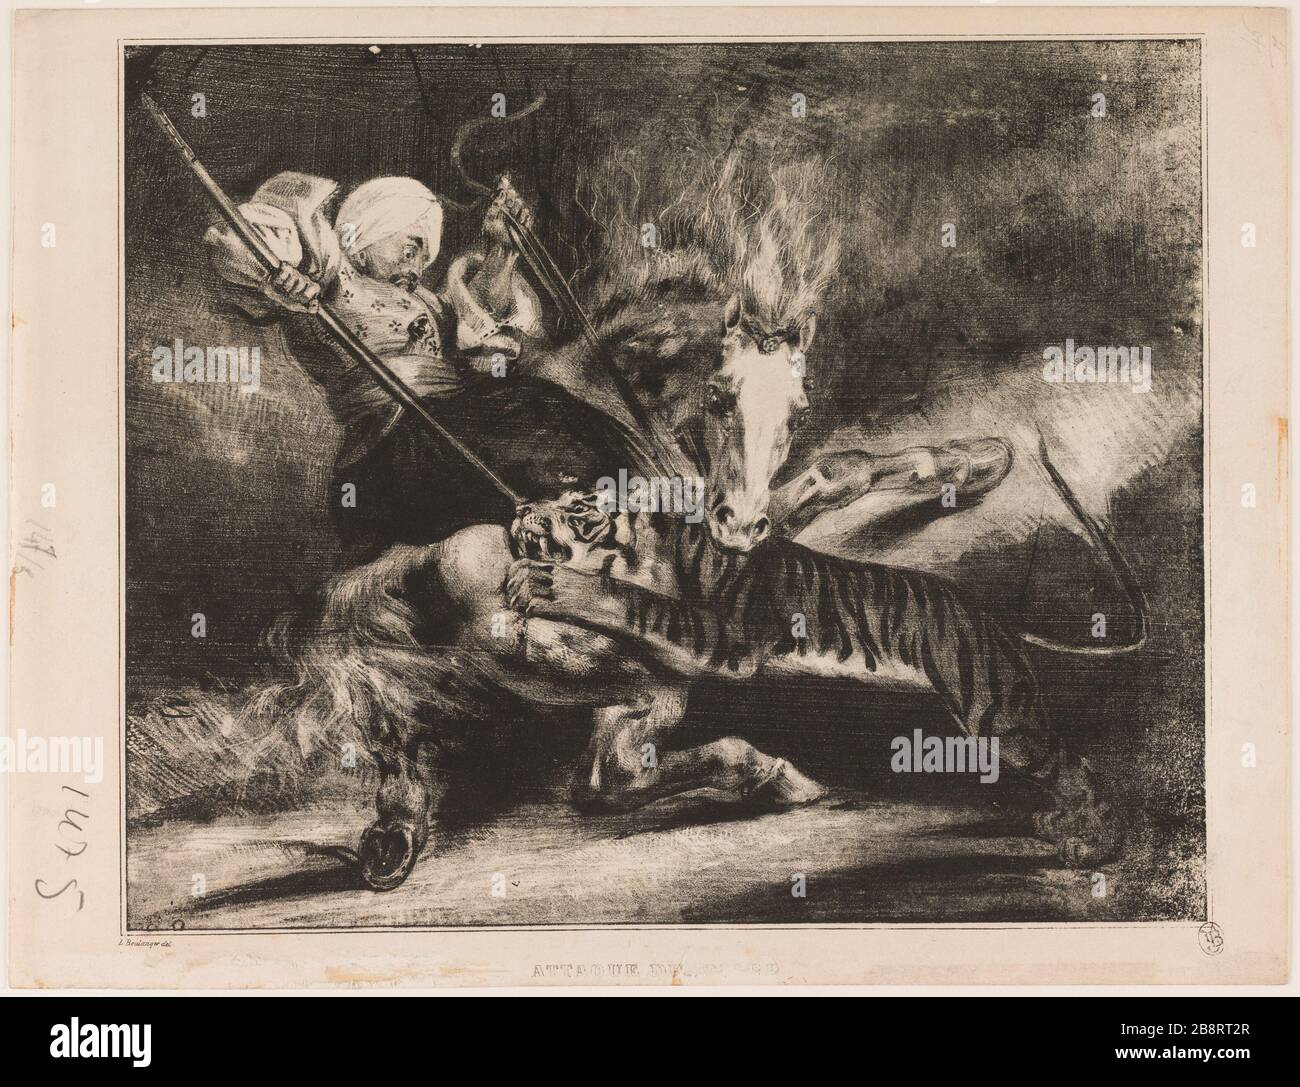 Tiger Attack Louis Candide Boulanger (1806-1867). 'Attaque du tigre'. Lithographie sur papier. 1830. Paris, Maison de Victor Hugo. Stock Photo